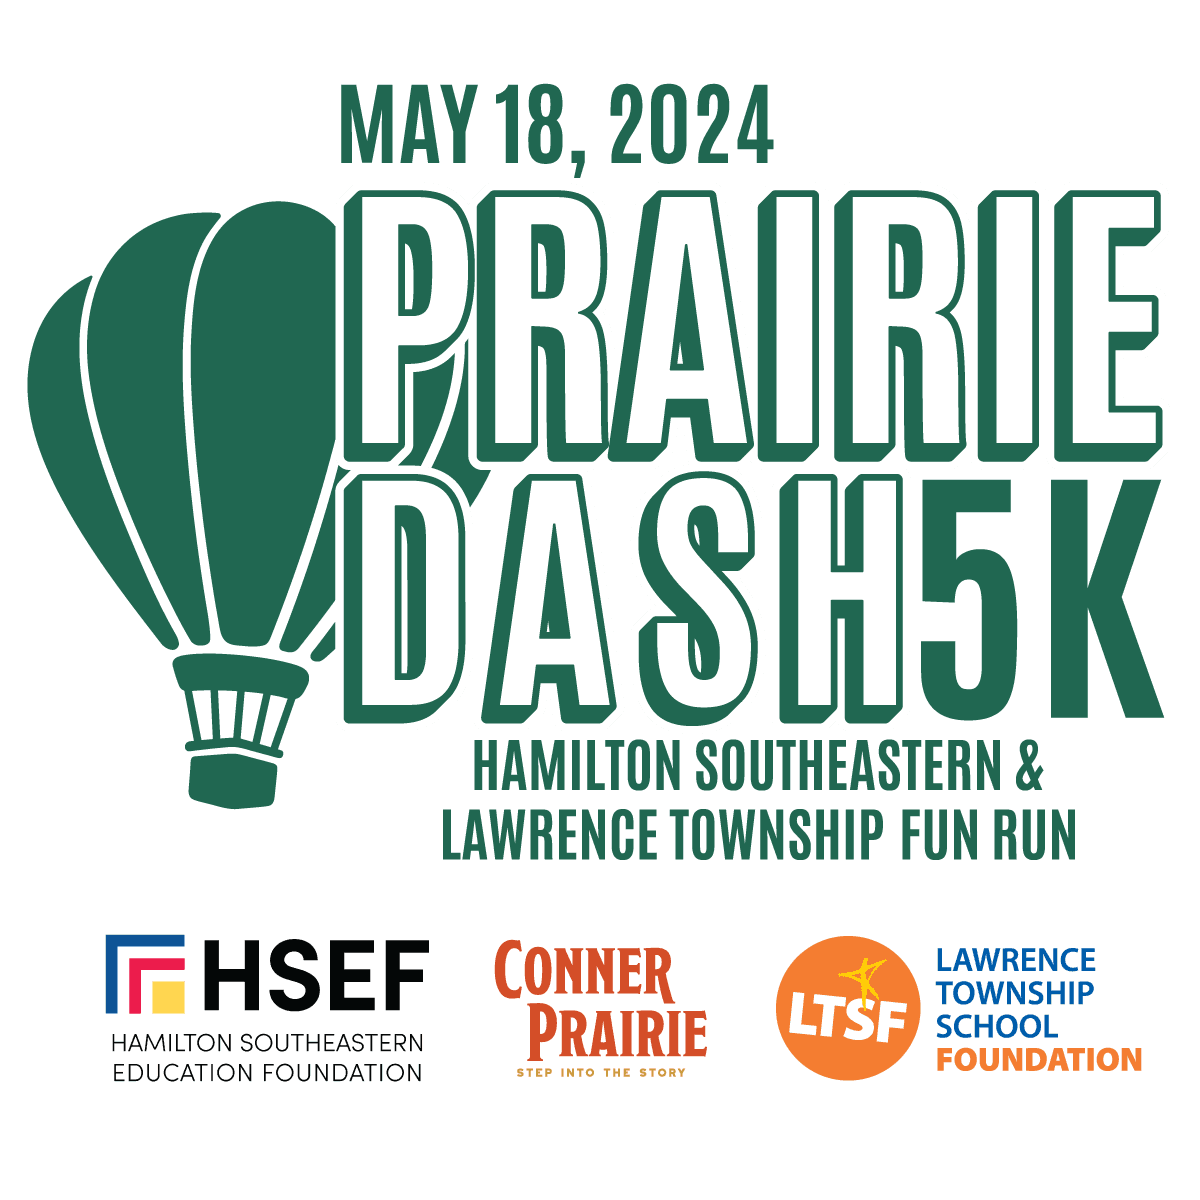 Join LTSF for the Prairie Dash 5K Fun Run!